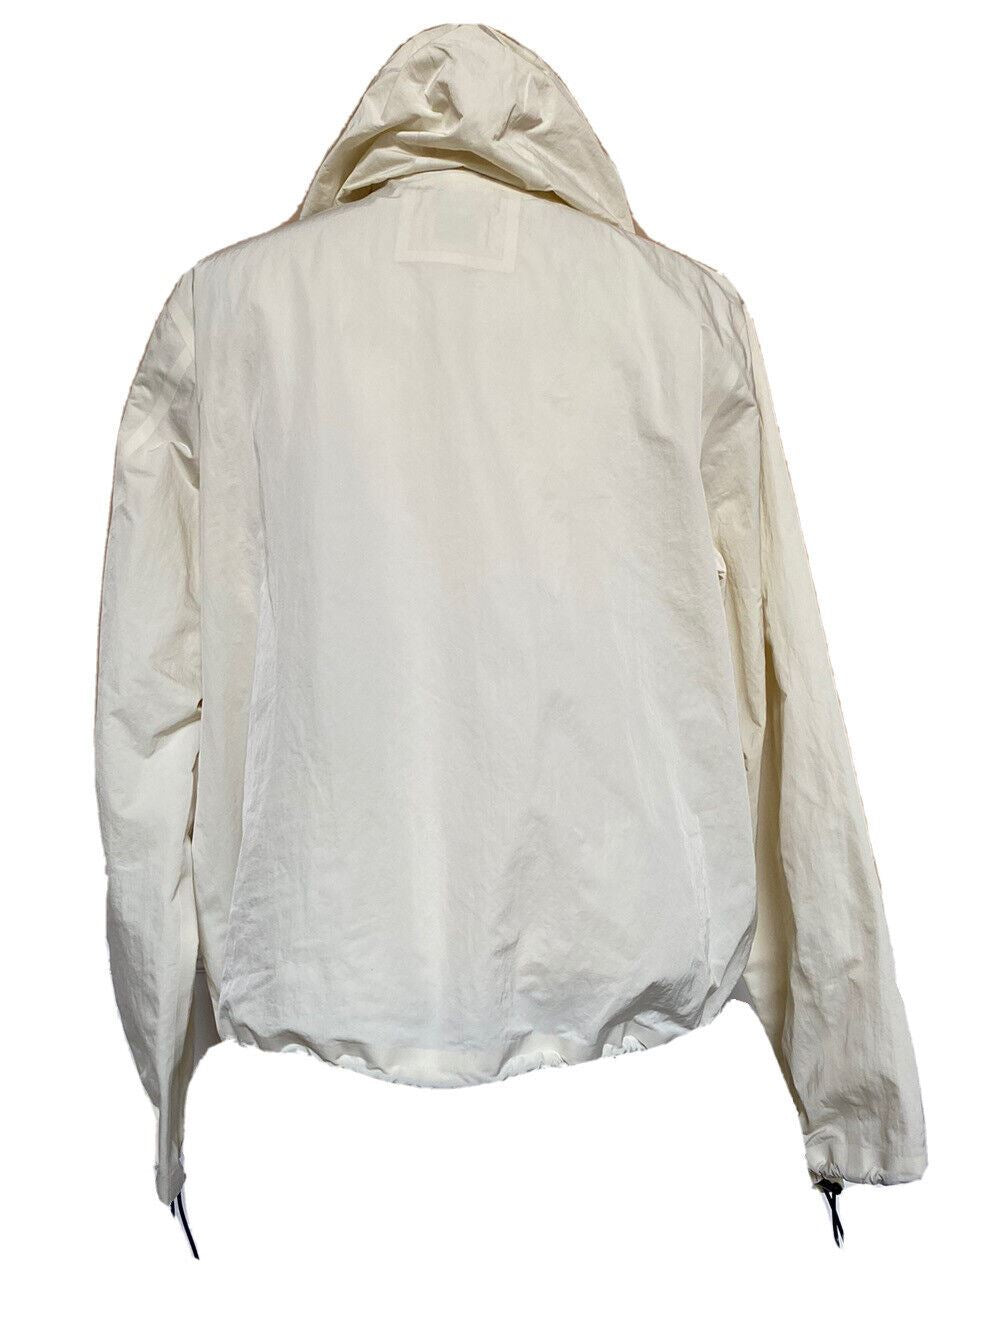 СЗТ 1850 долларов США Bottega Veneta Мужская куртка из мелового технического нейлона с капюшоном 40 США